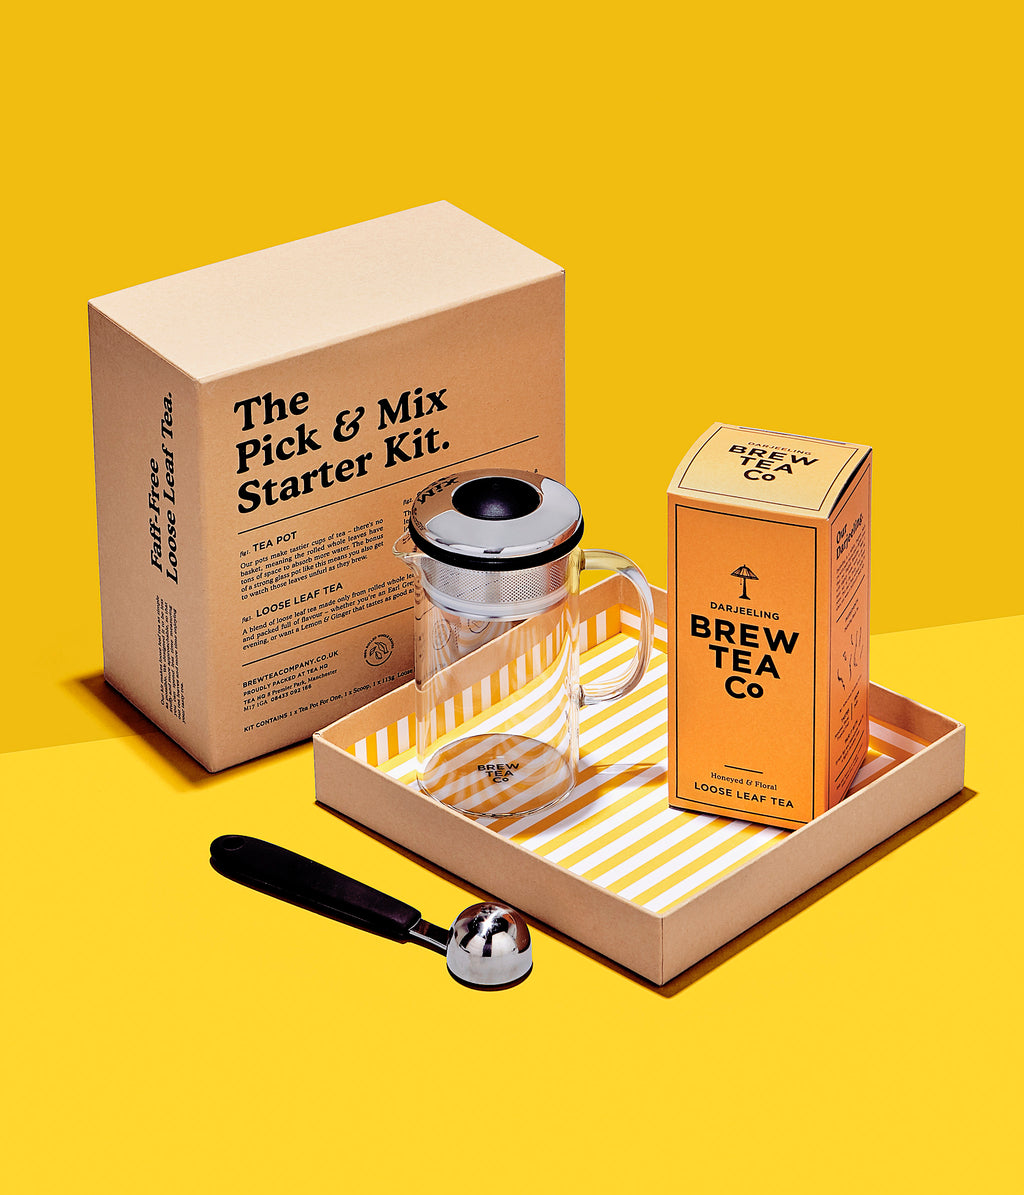 The Pick & Mix Starter Kit